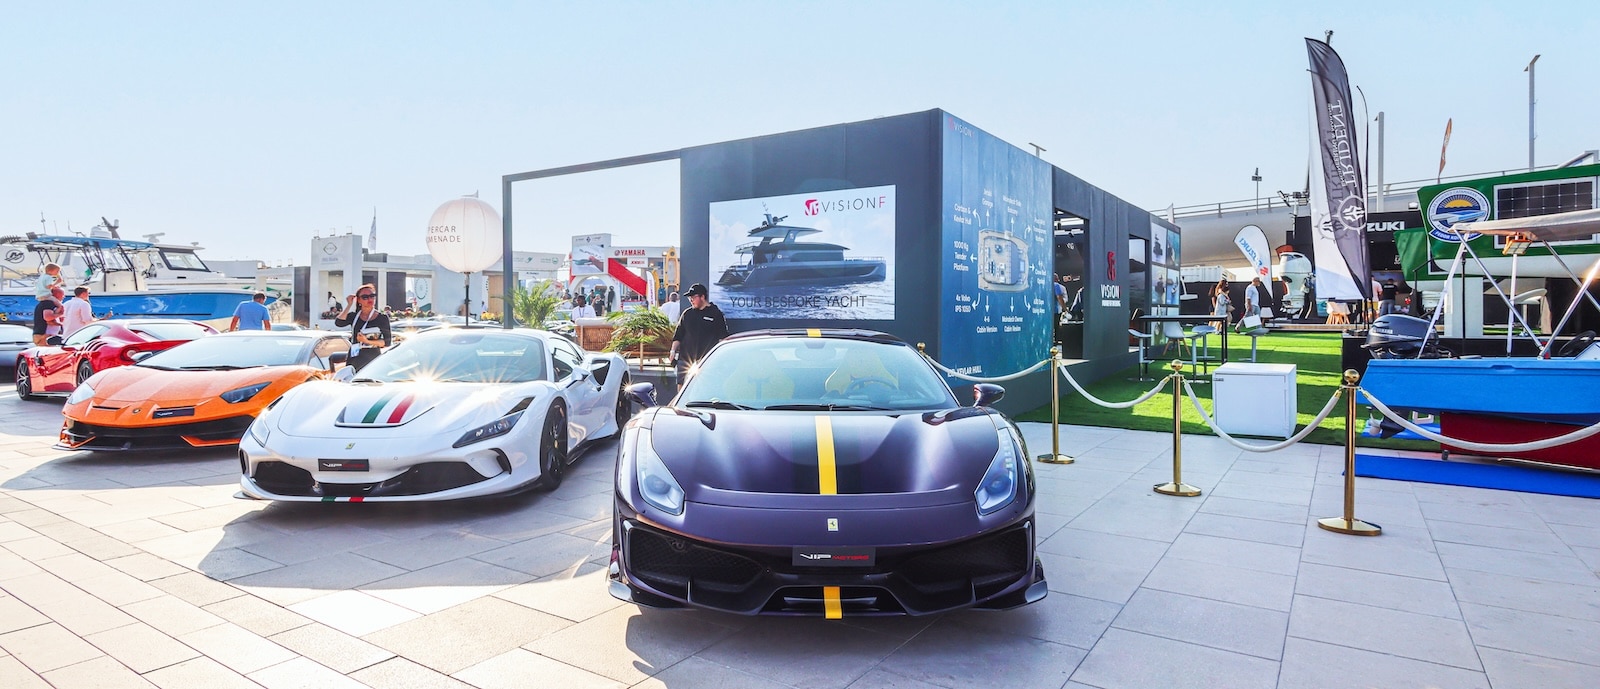 سيارات فاخرة في معرض دبي الدولي للقوارب